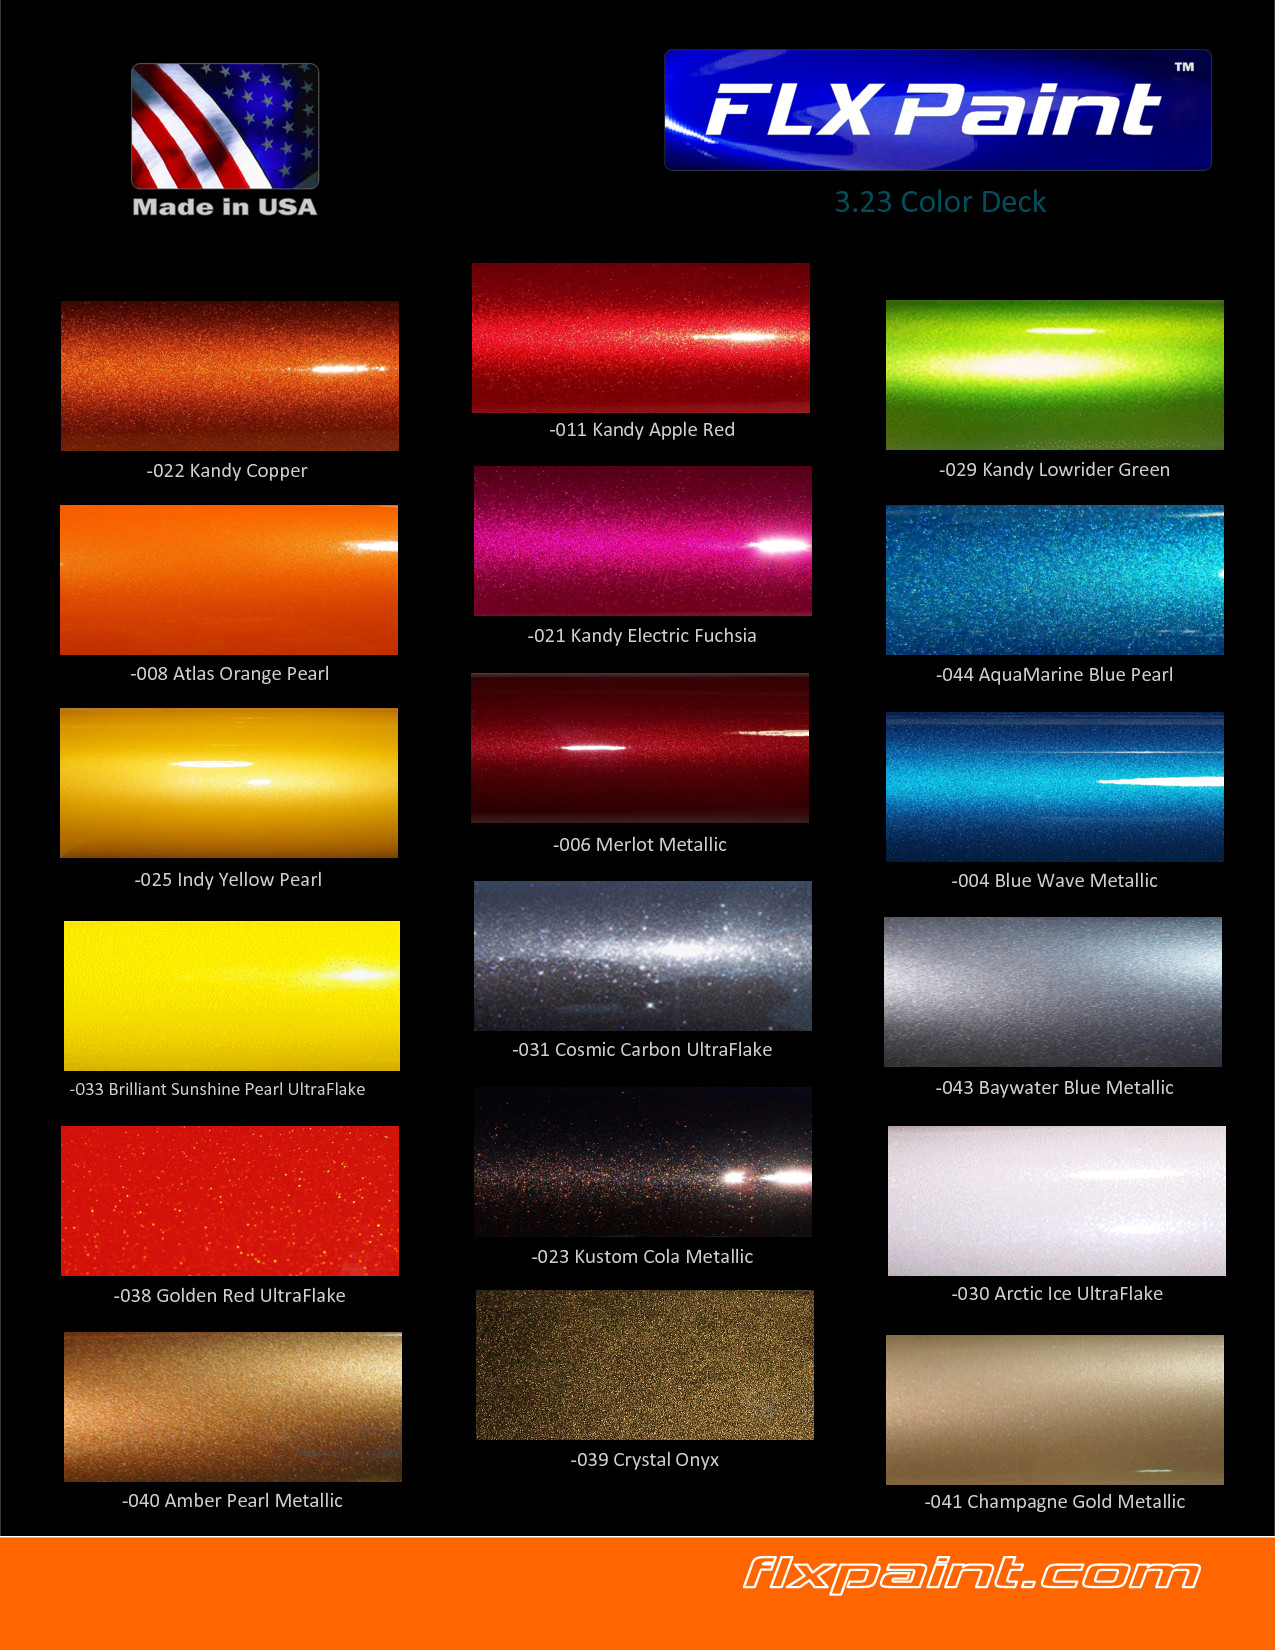 Best ideas about Ppg Auto Paint Colors
. Save or Pin ppg automotive paint colors ppg single stage paint Now.